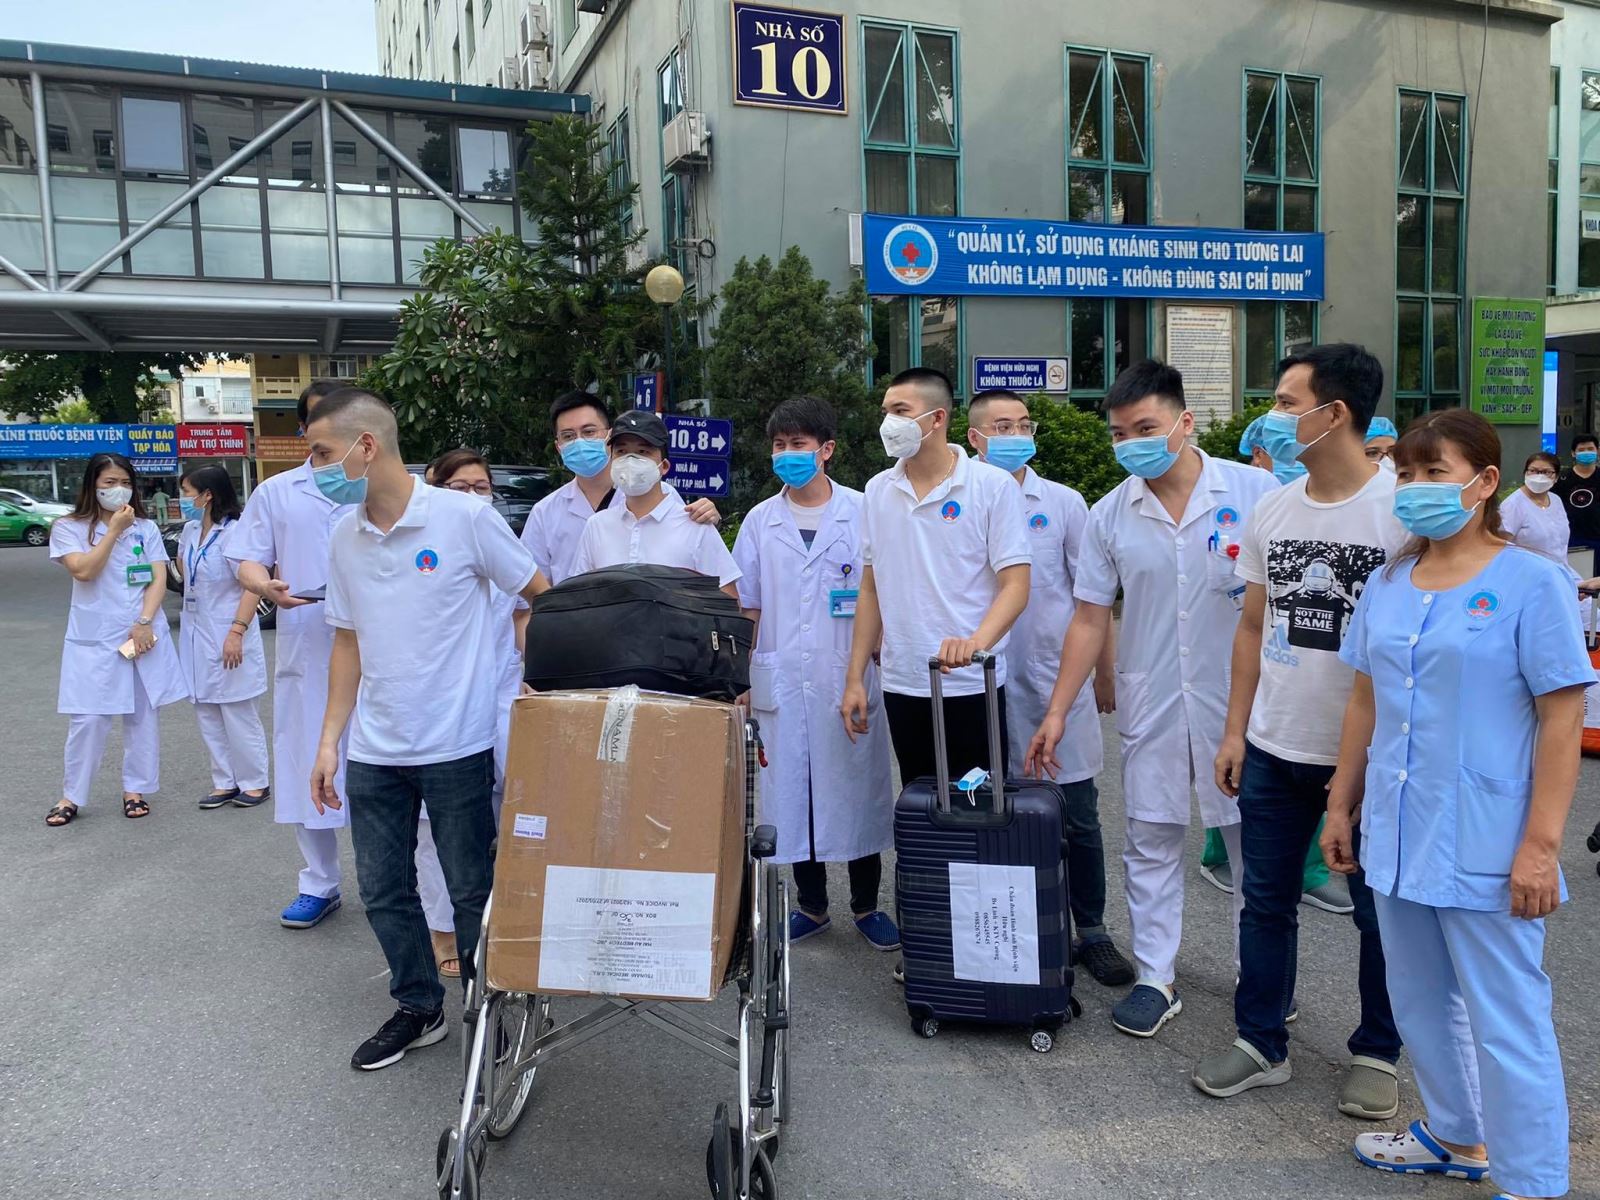 Đoàn quân áo trắng của Bệnh viện Hữu Nghị lên đường hỗ trợ TP Hồ Chí Minh chống dịch - Ảnh 3.